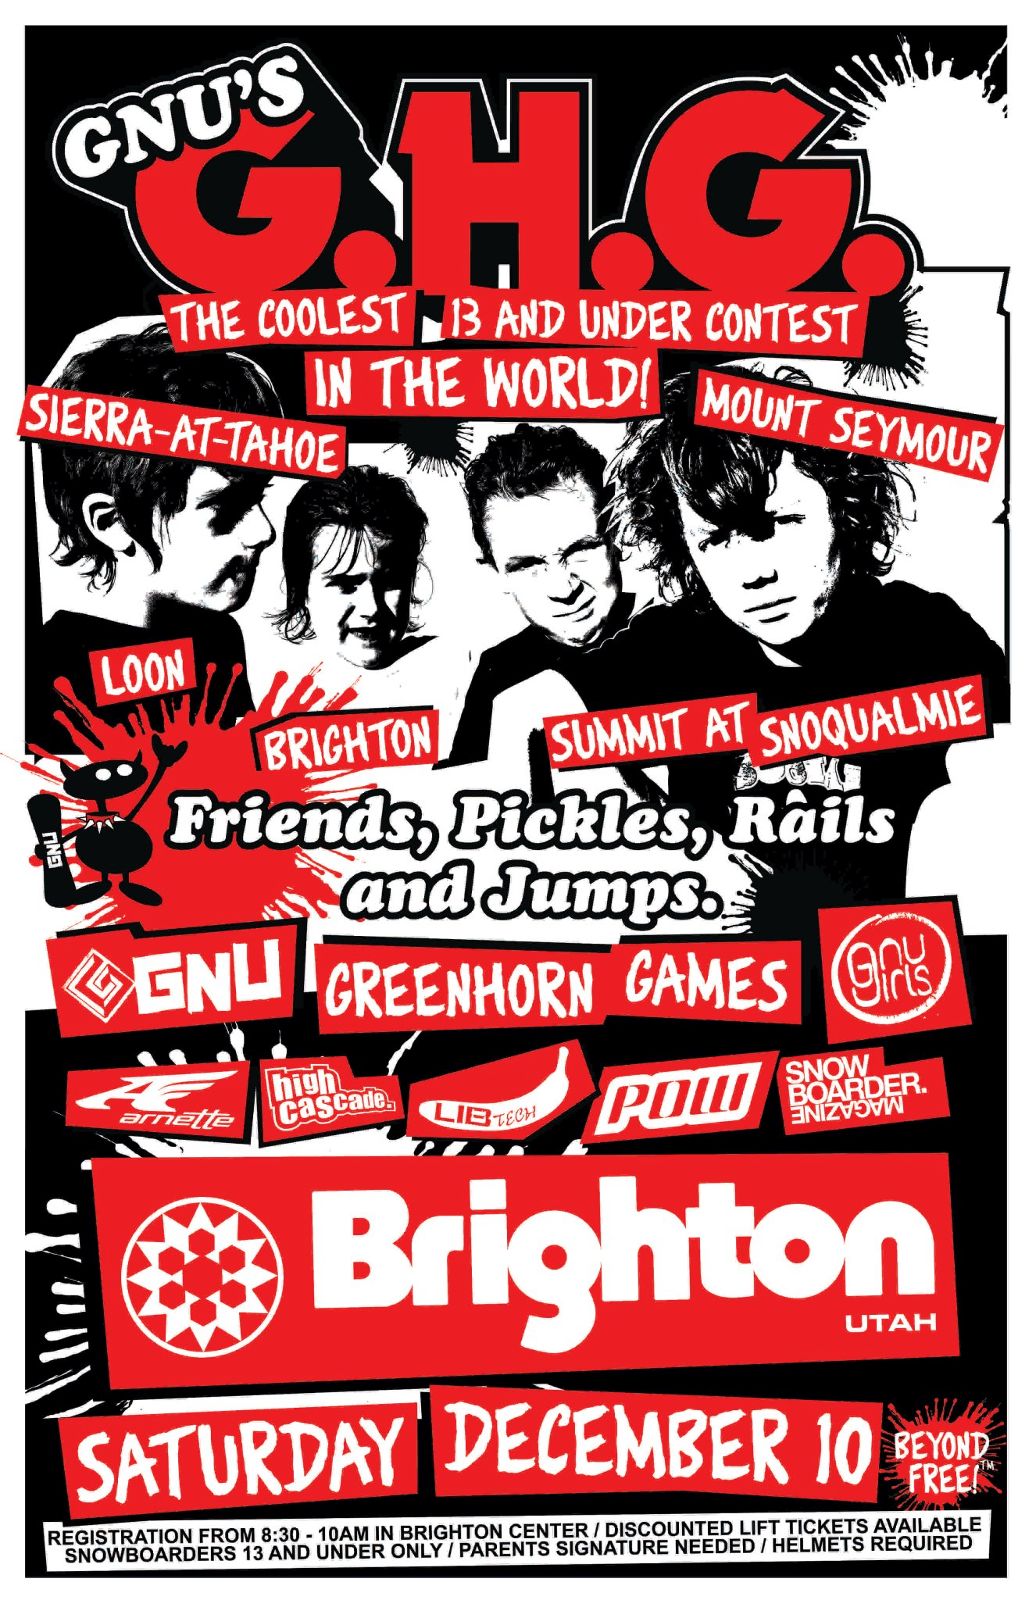 Fun Events At Brighton